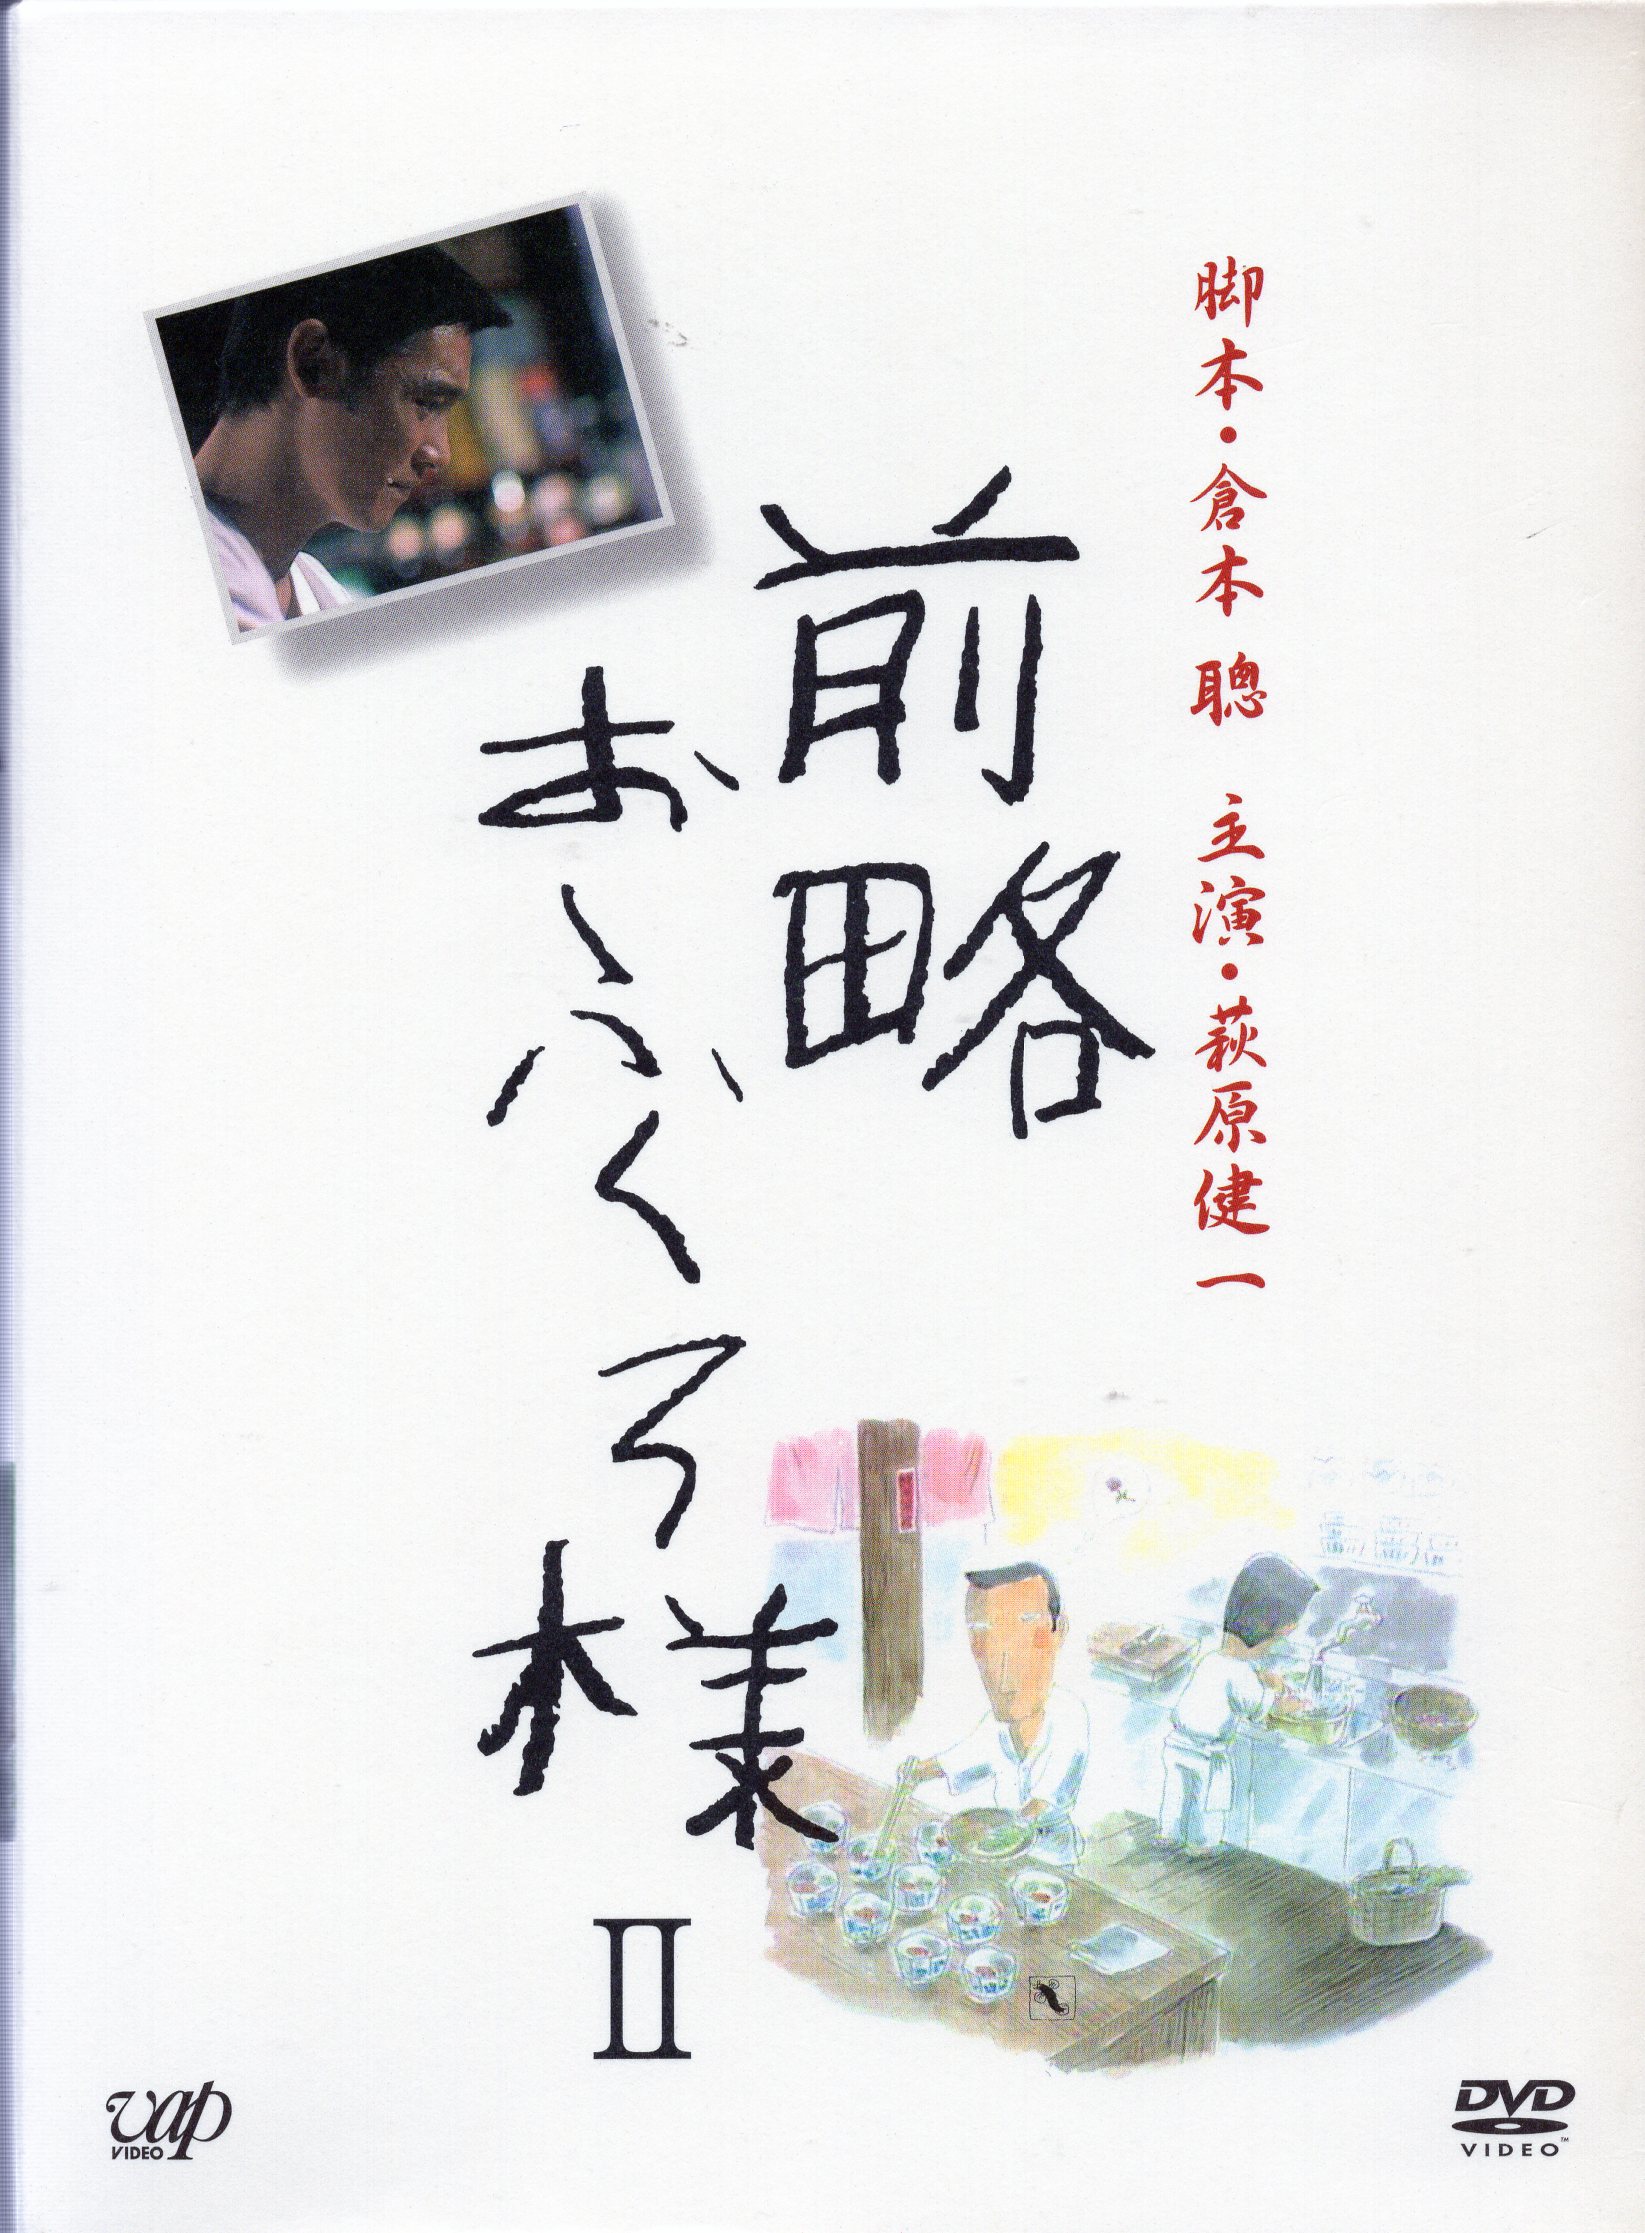 DVD 前略おふくろ様 Ⅱ DVD-BOX - esupport.vn